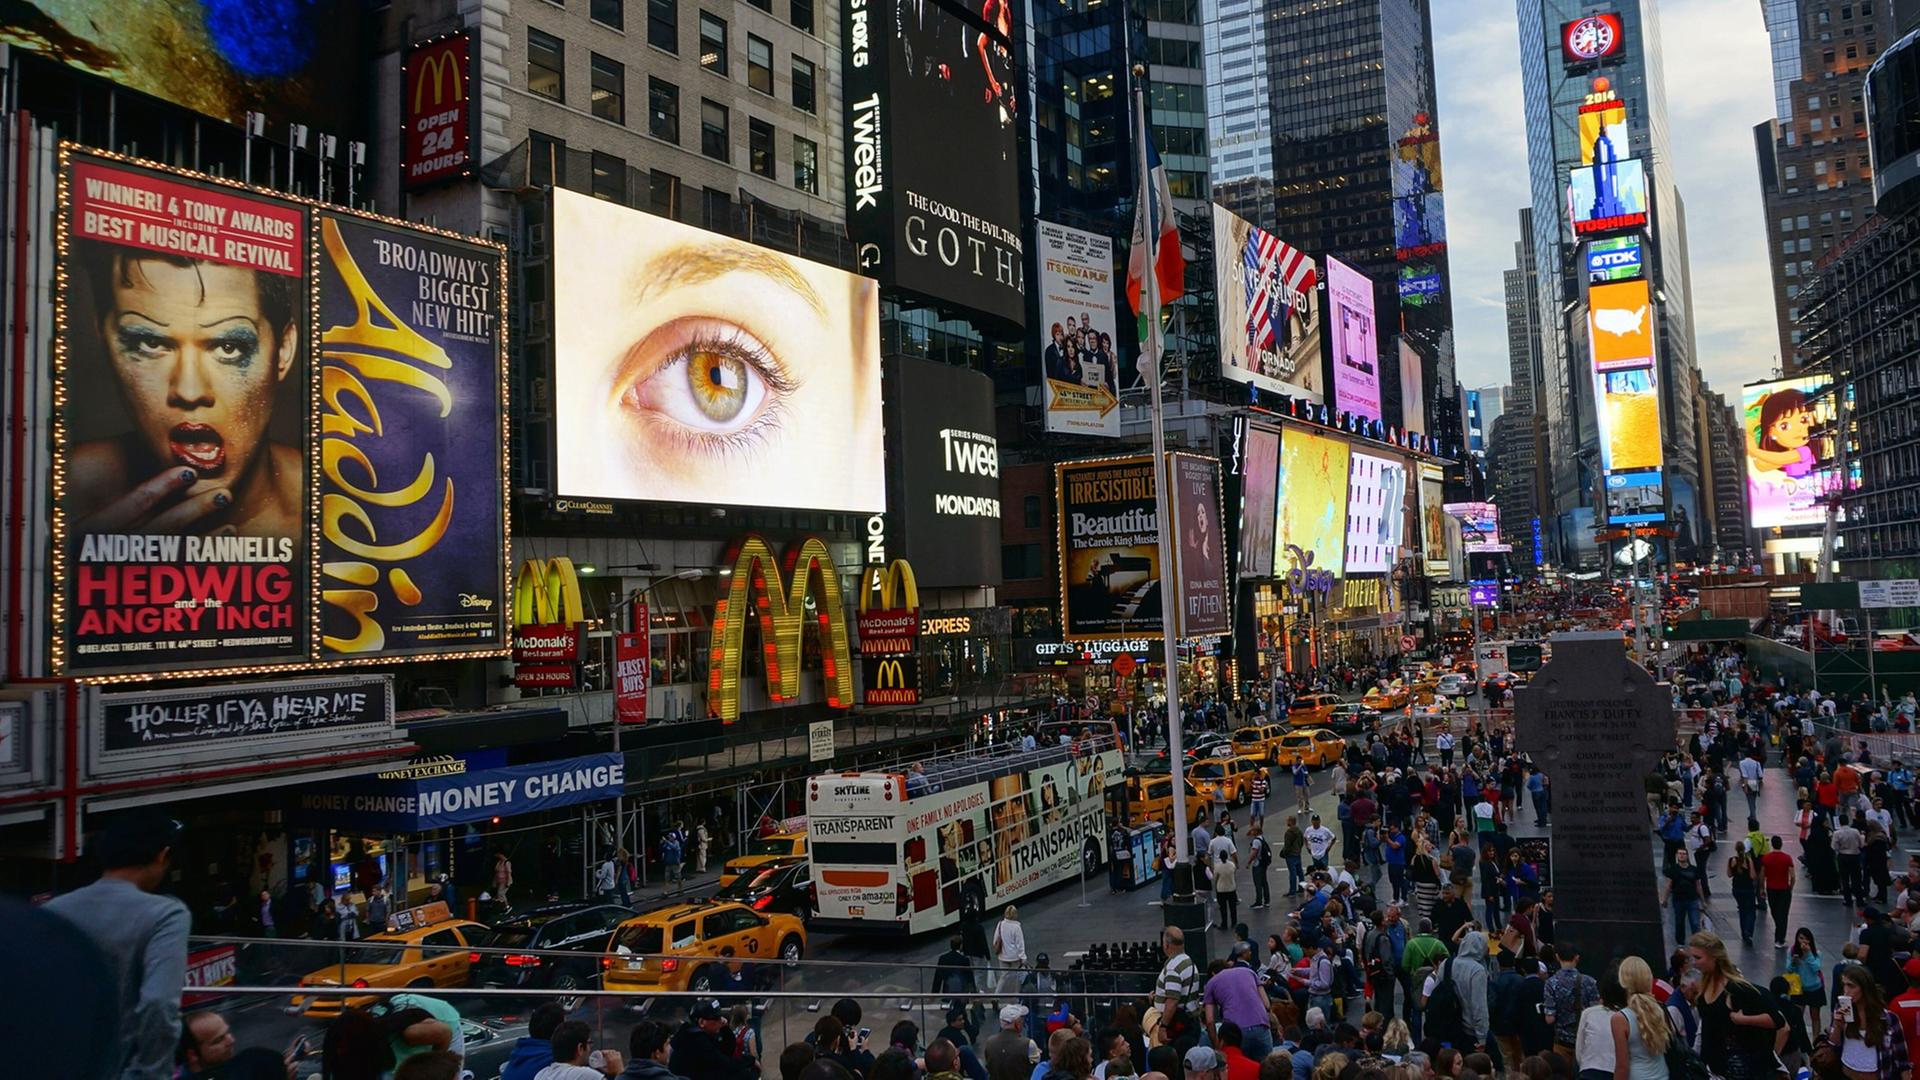 Der Times Square in New York mit zahllosen Reklametafeln an Häuserwänden und auf Fahrzeugen.